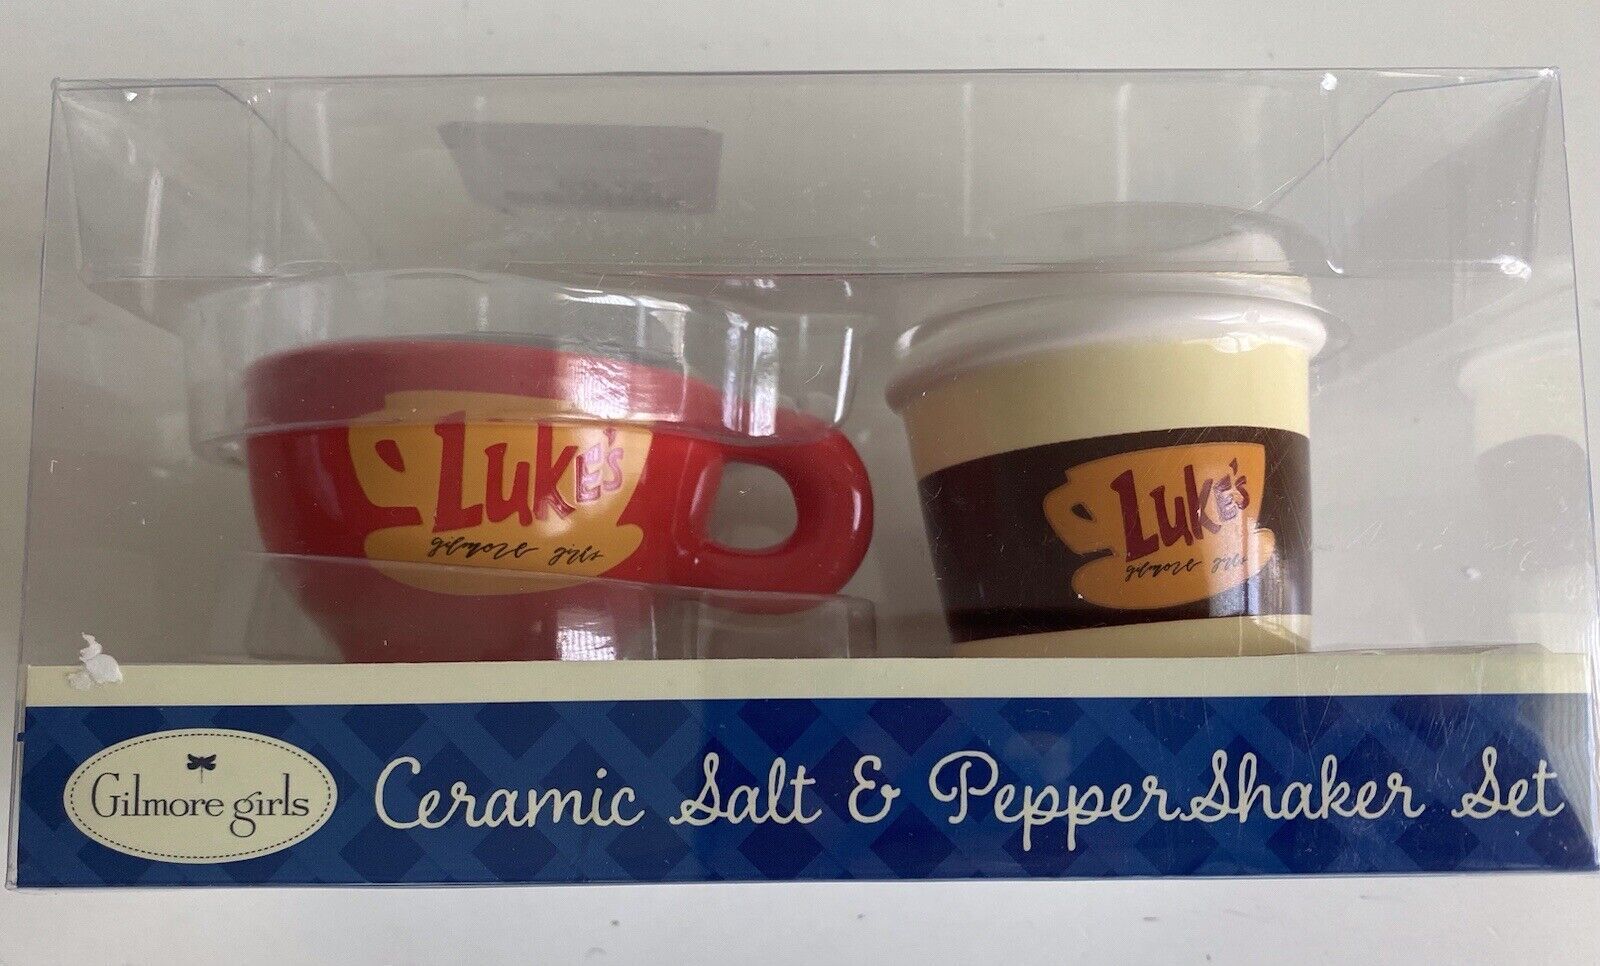 Gilmore Girls Latte Mug Ceramic Salt And Pepper Shaker Set “Luke’s” NEW